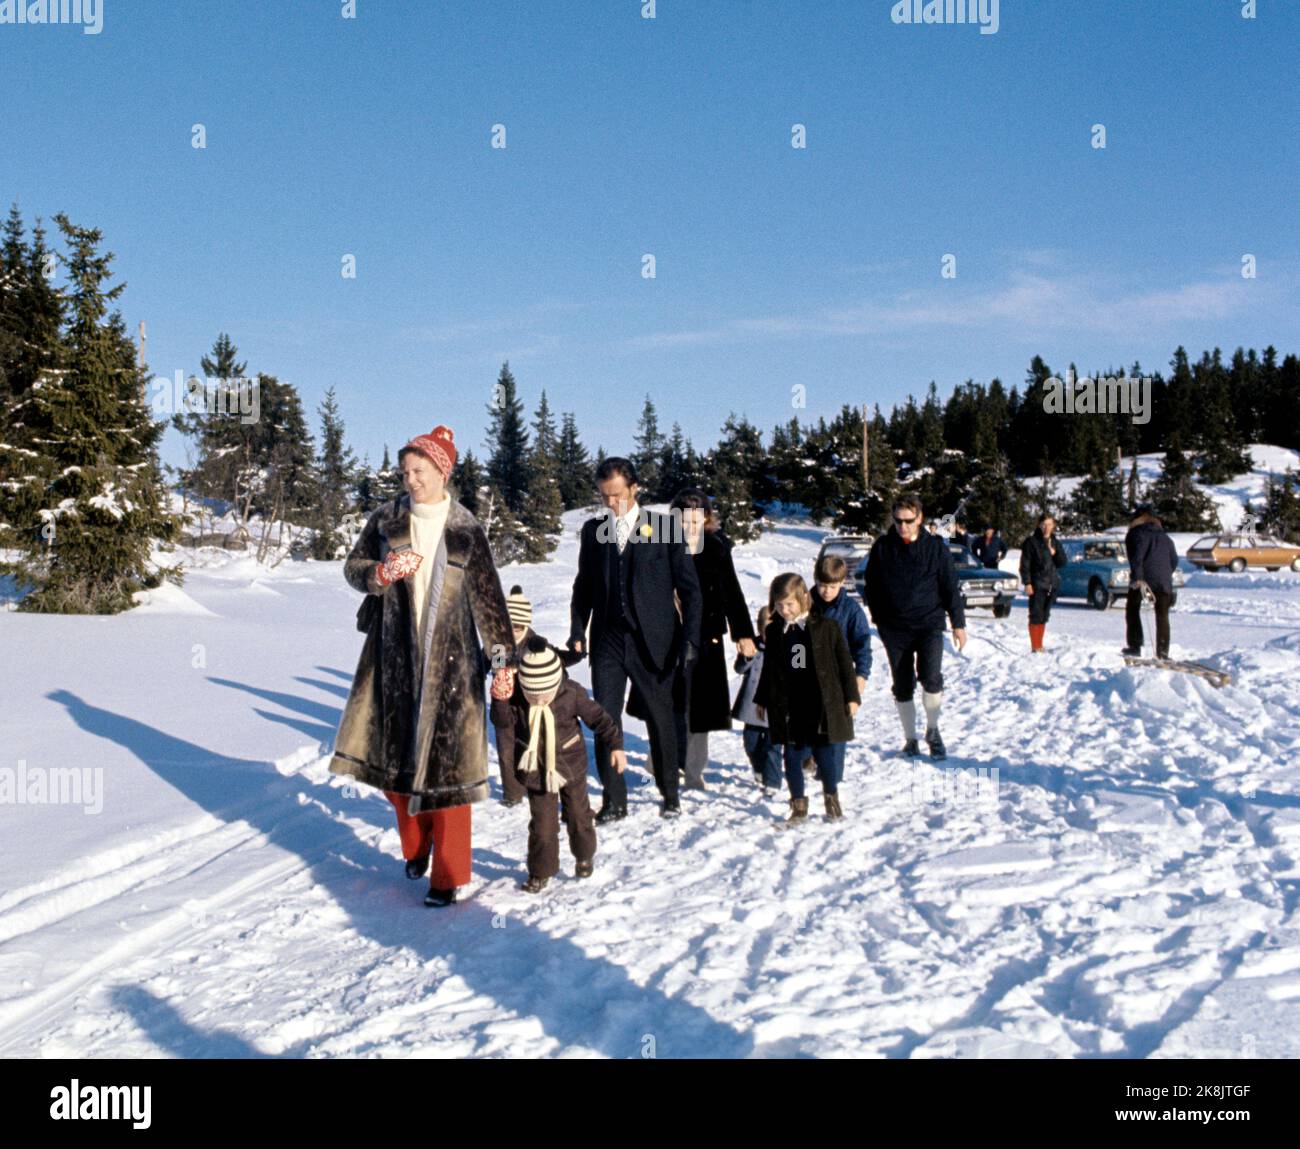 Gausdal Febbraio 1973 Principessa Margrethe II di Danimarca in vacanza sugli sci in Norvegia. Qui con l'uomo, il principe Henrik e i loro due figli, Frederik (nato nel 1968) e Joachim (nato nel 1969), entrambi con cappello a righe. Foto: NTB *** Foto non elaborata ***** Foto Stock